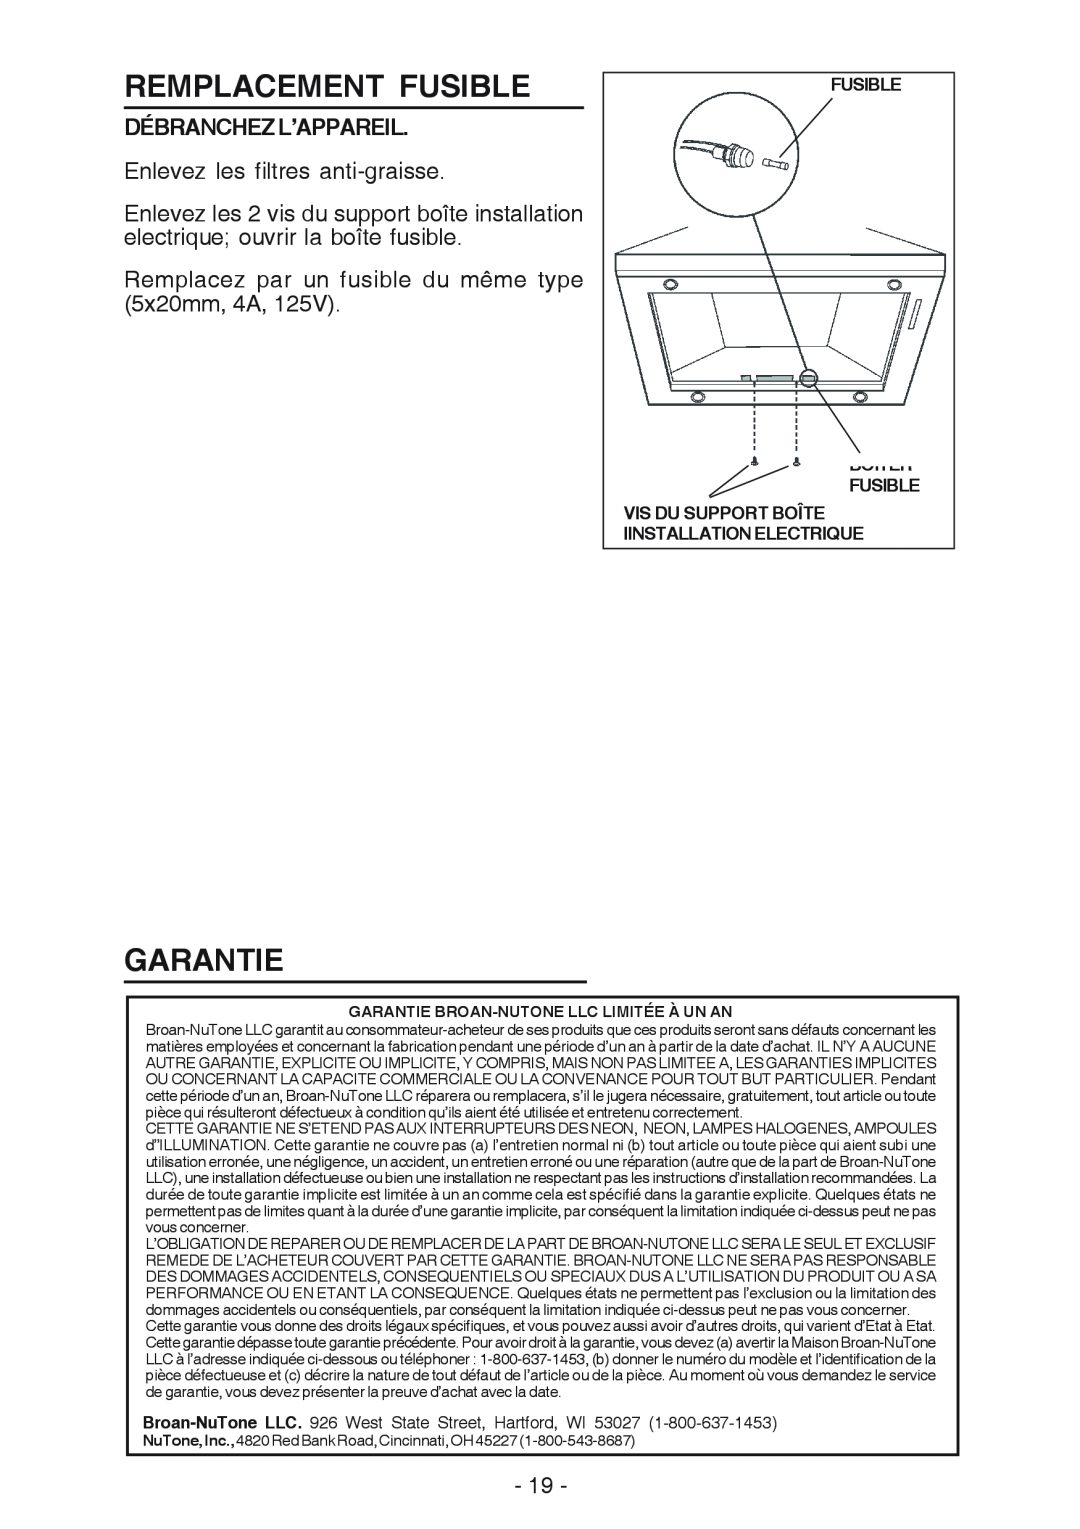 NuTone NP63000 manual Remplacement Fusible, Garantie, Débranchezl’Appareil, Fusible Boîter Fusible 